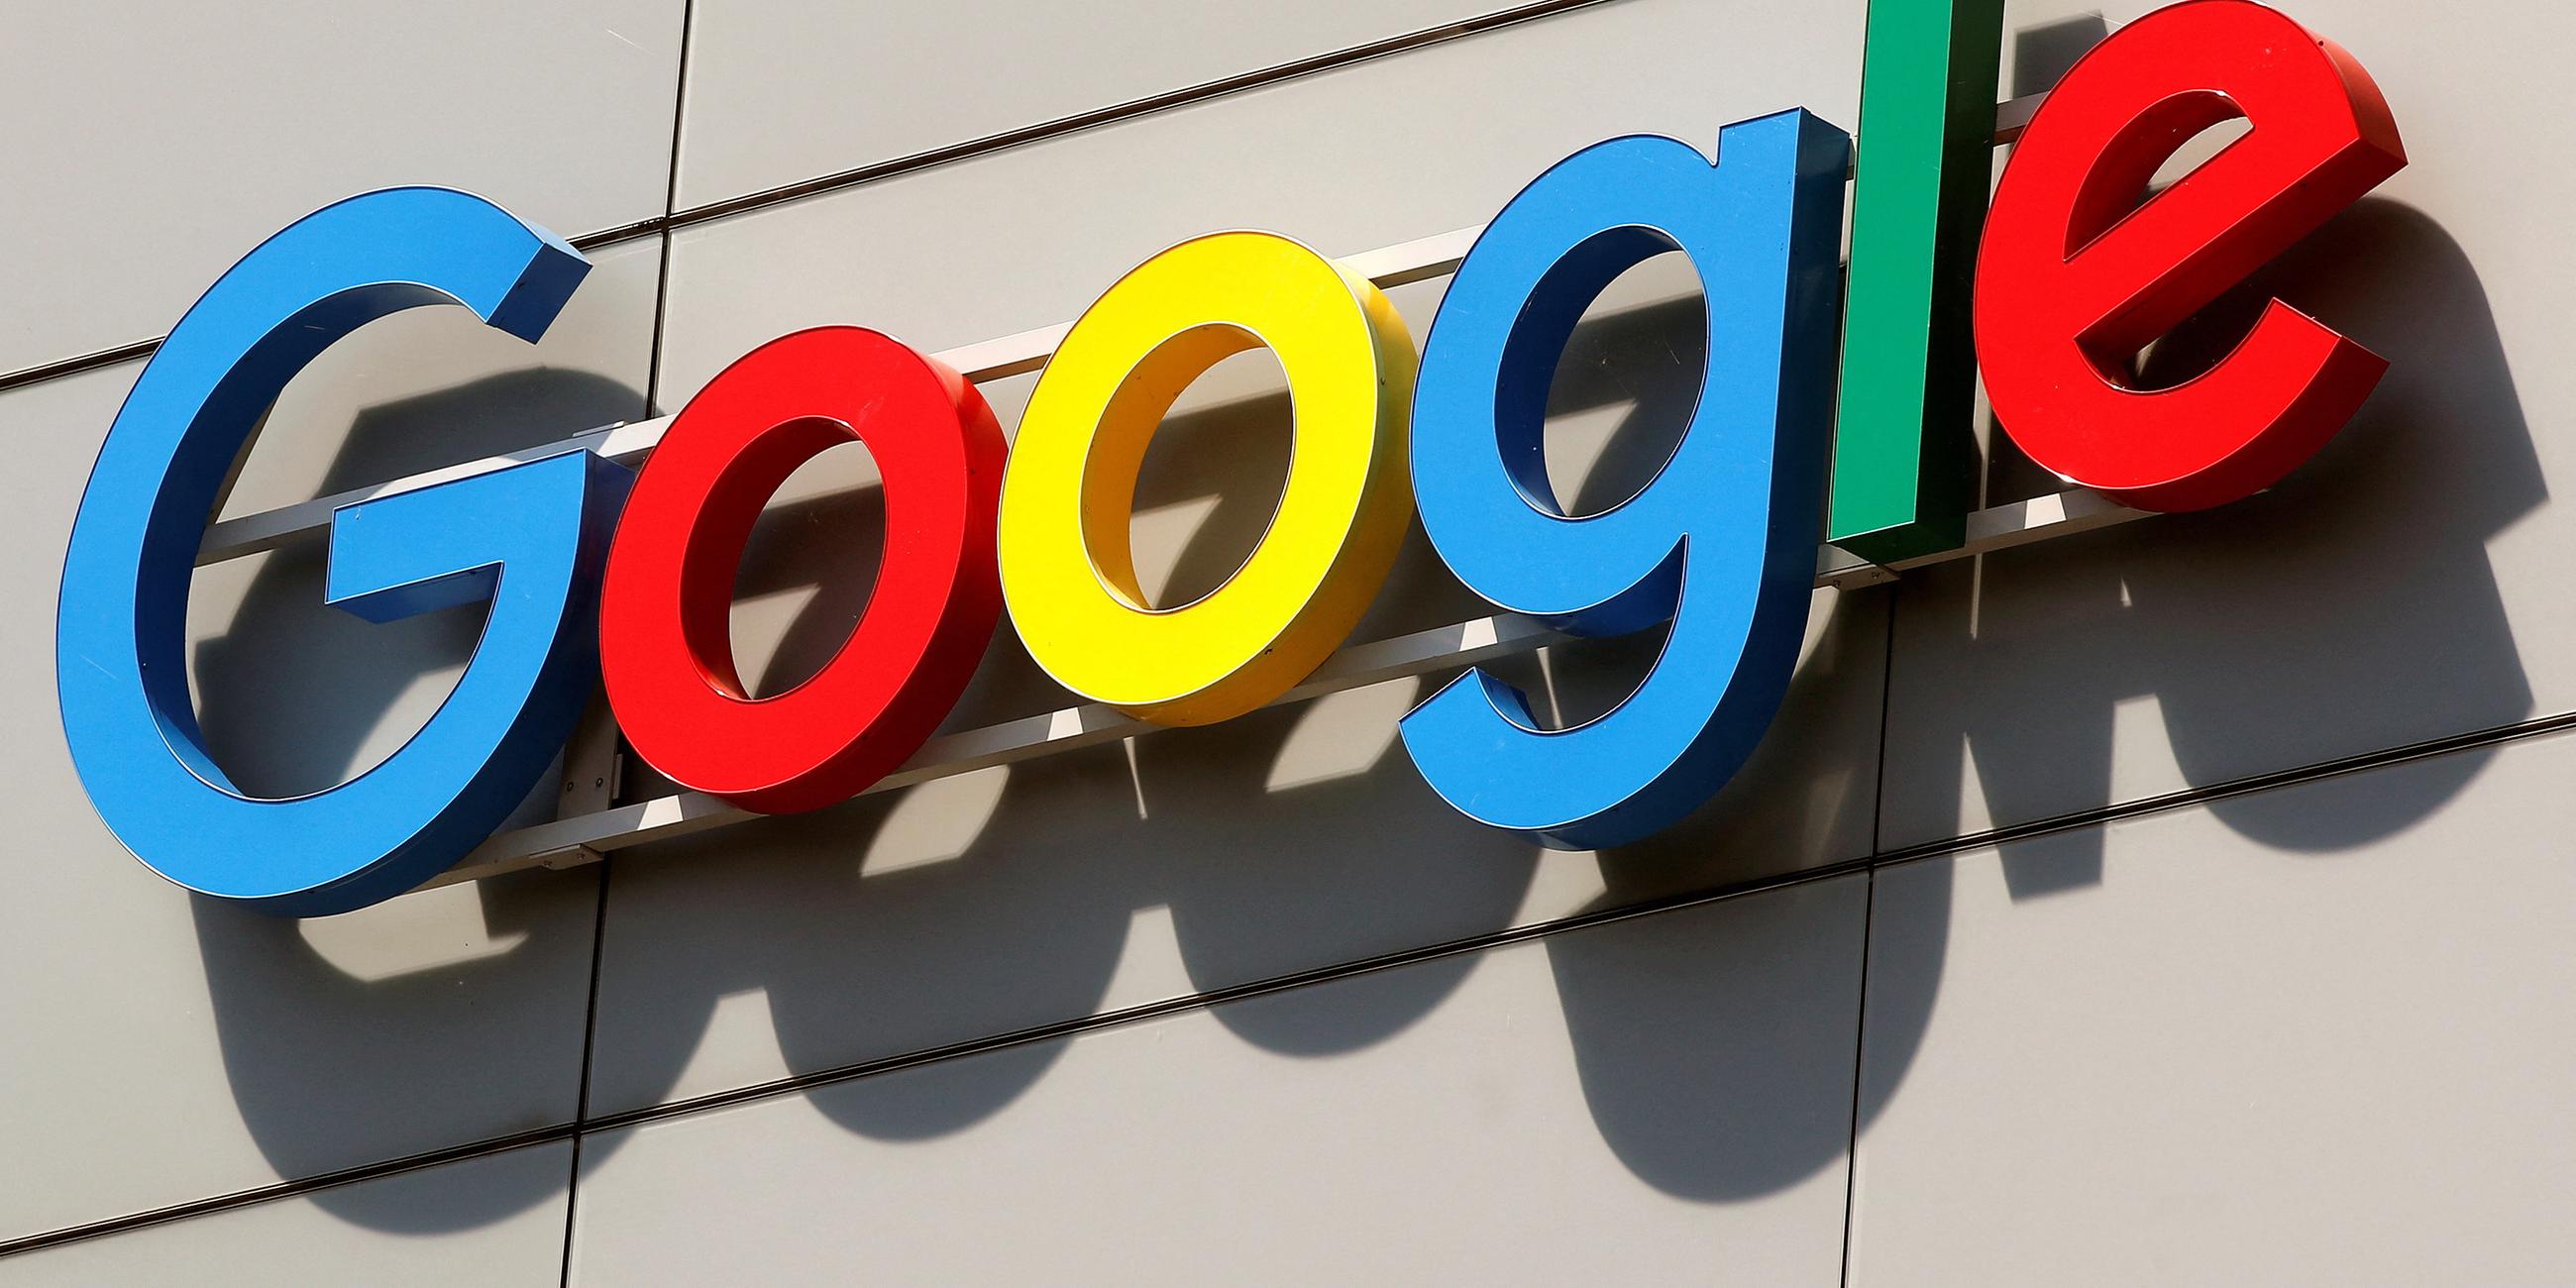 Google: Mehr Macht als je zuvor